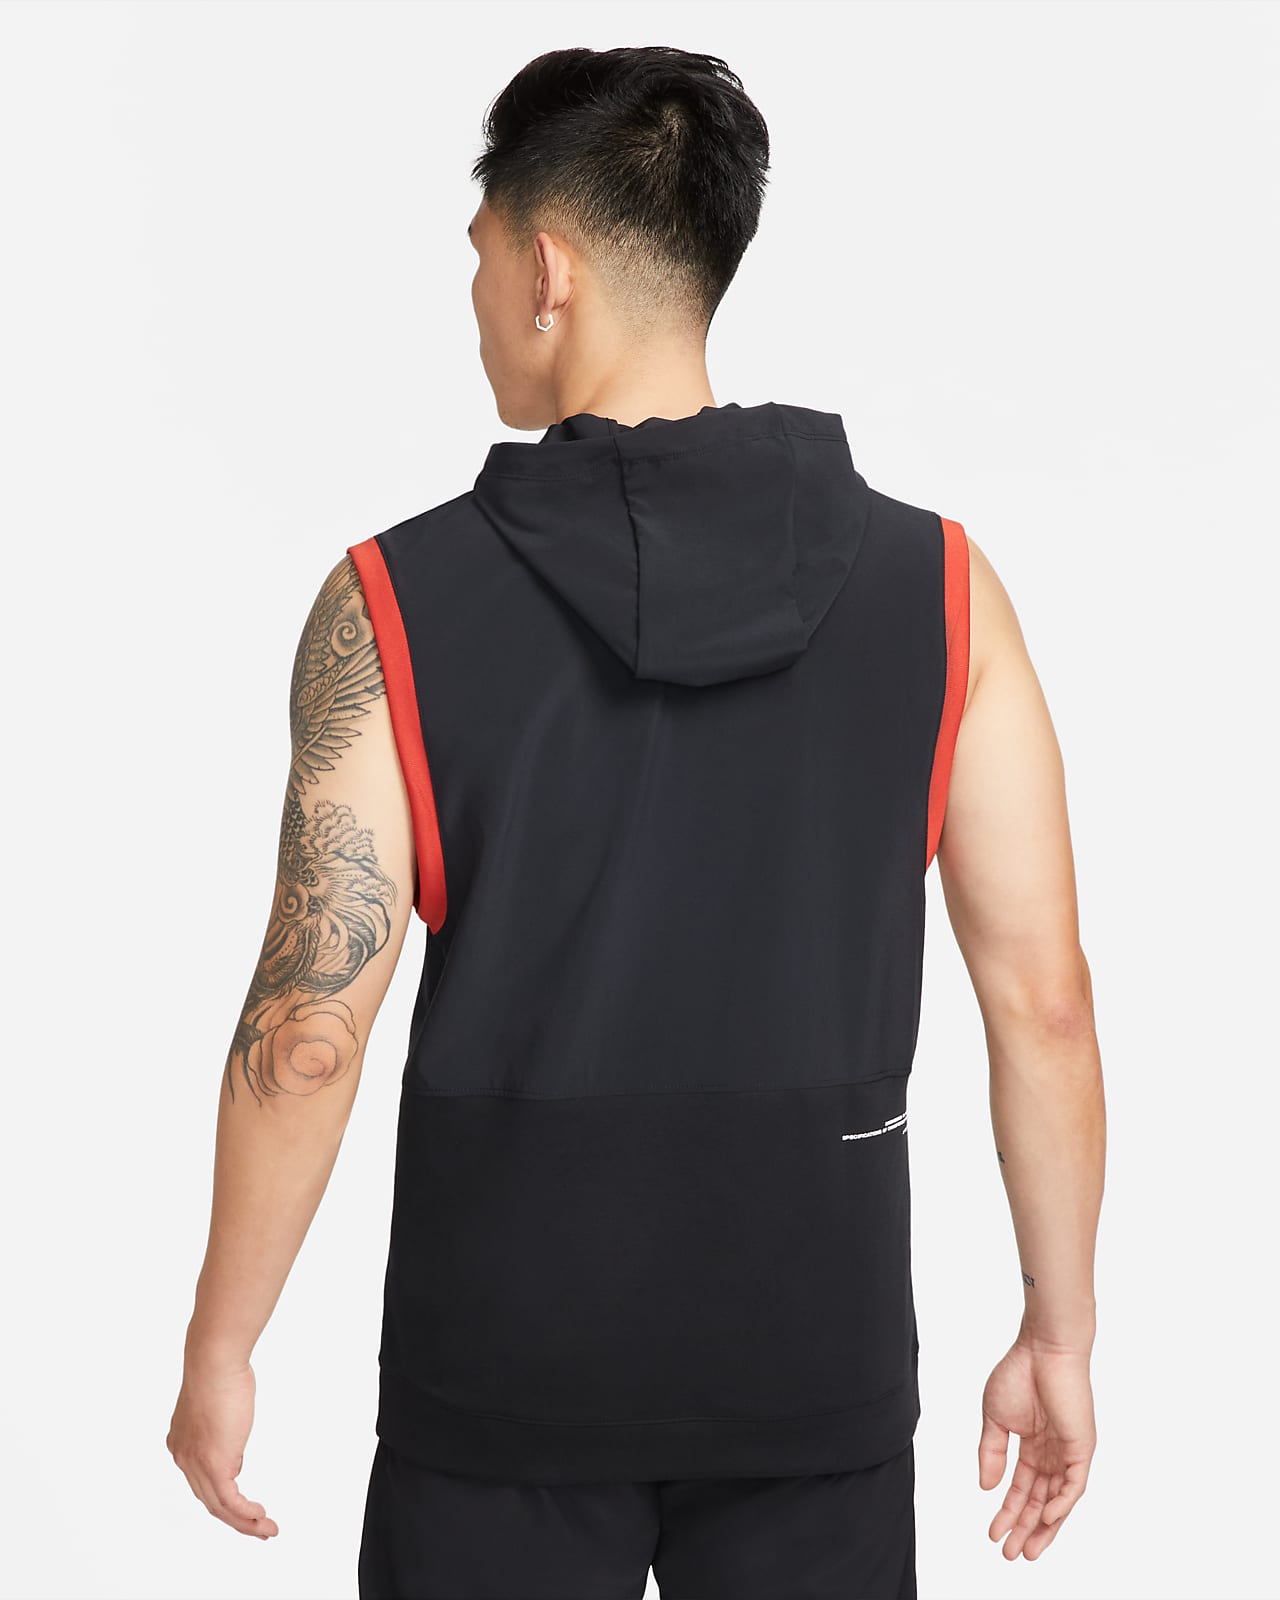 nike men's sleeveless hooded training top